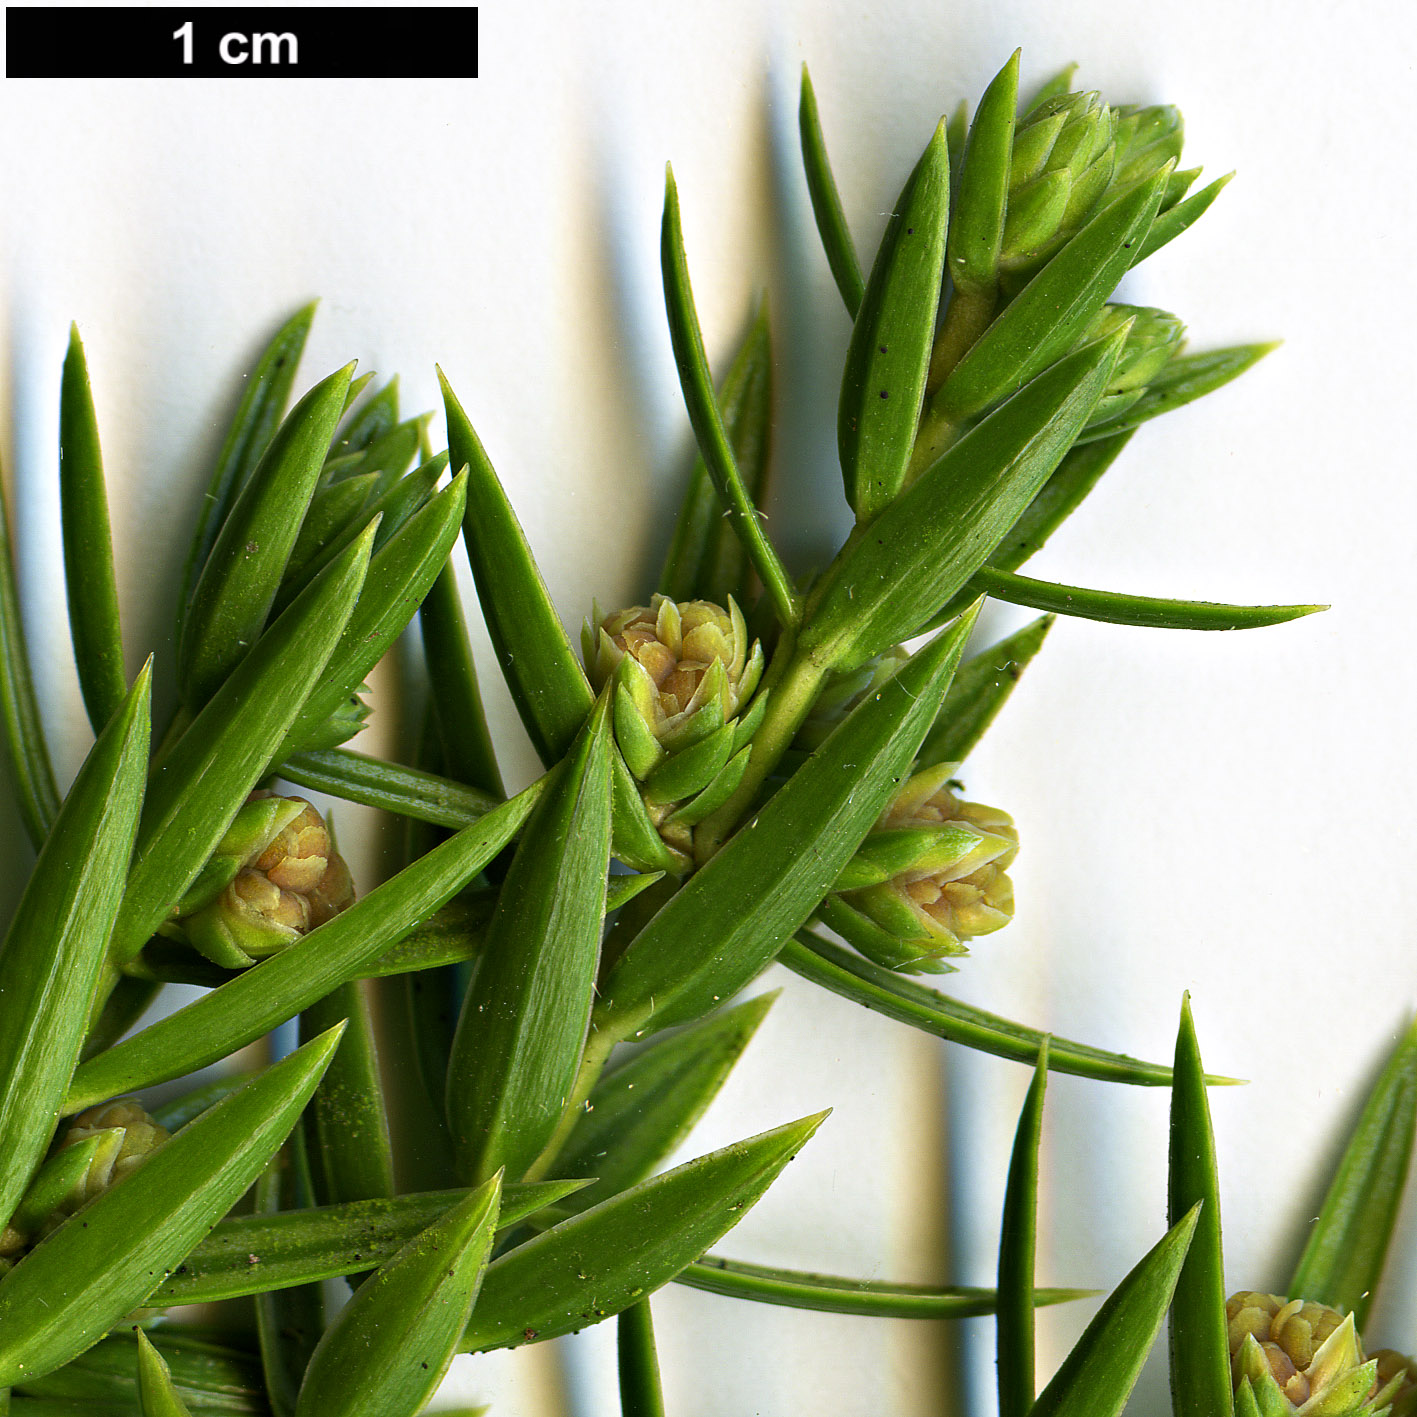 High resolution image: Family: Cupressaceae - Genus: Juniperus - Taxon: drupacea